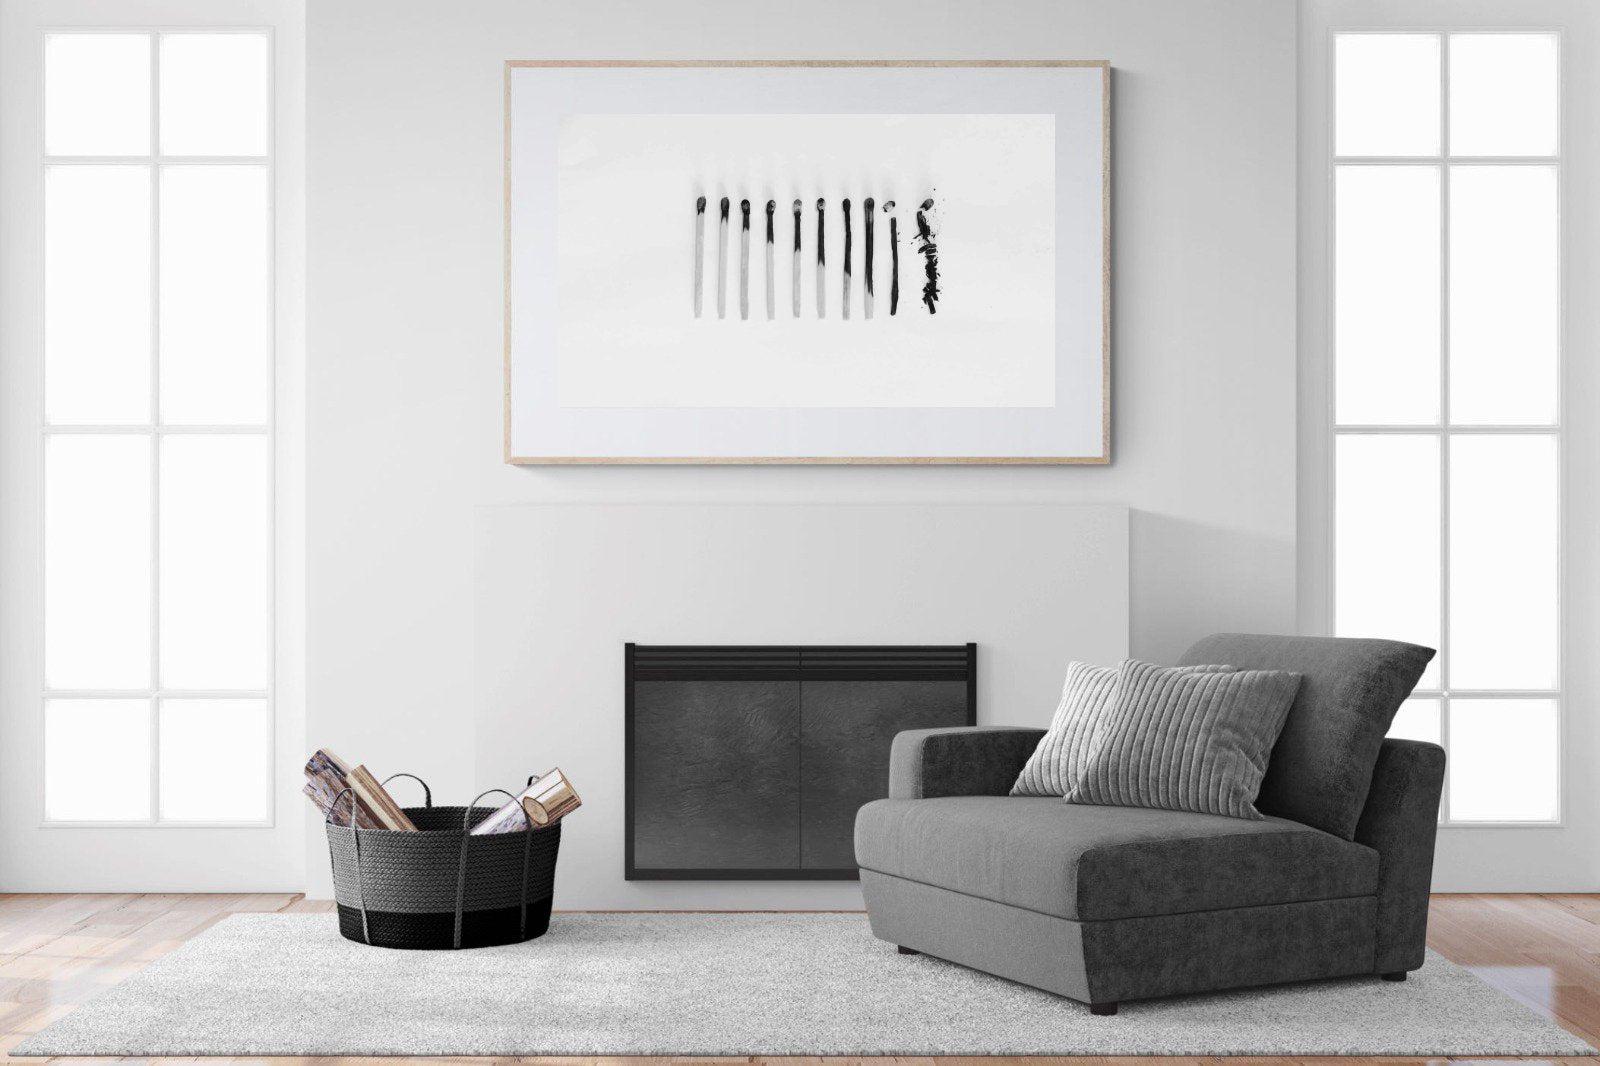 Matchsticks-Wall_Art-150 x 100cm-Framed Print-Wood-Pixalot